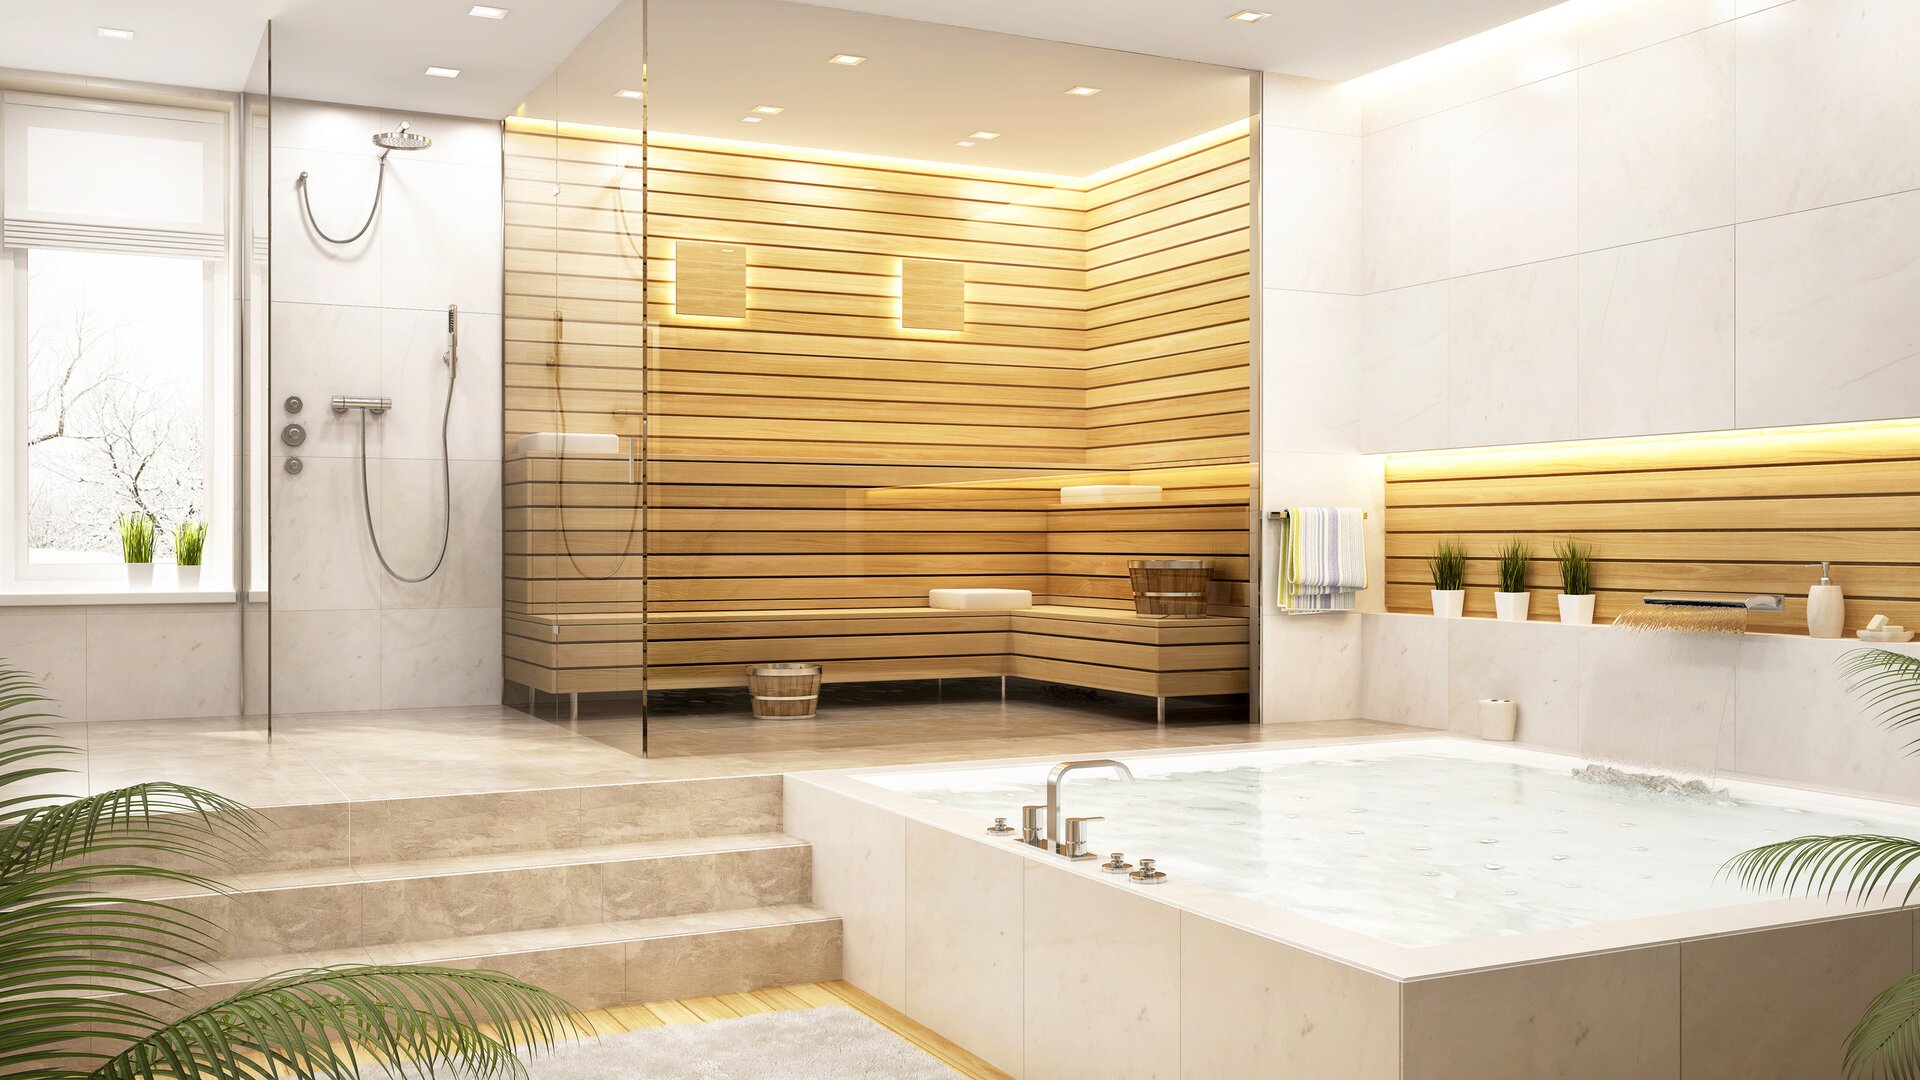 Bagno moderno di colore chiaro con piastrelle in pietra naturale, doccia, vasca idromassaggio e sauna in legno.